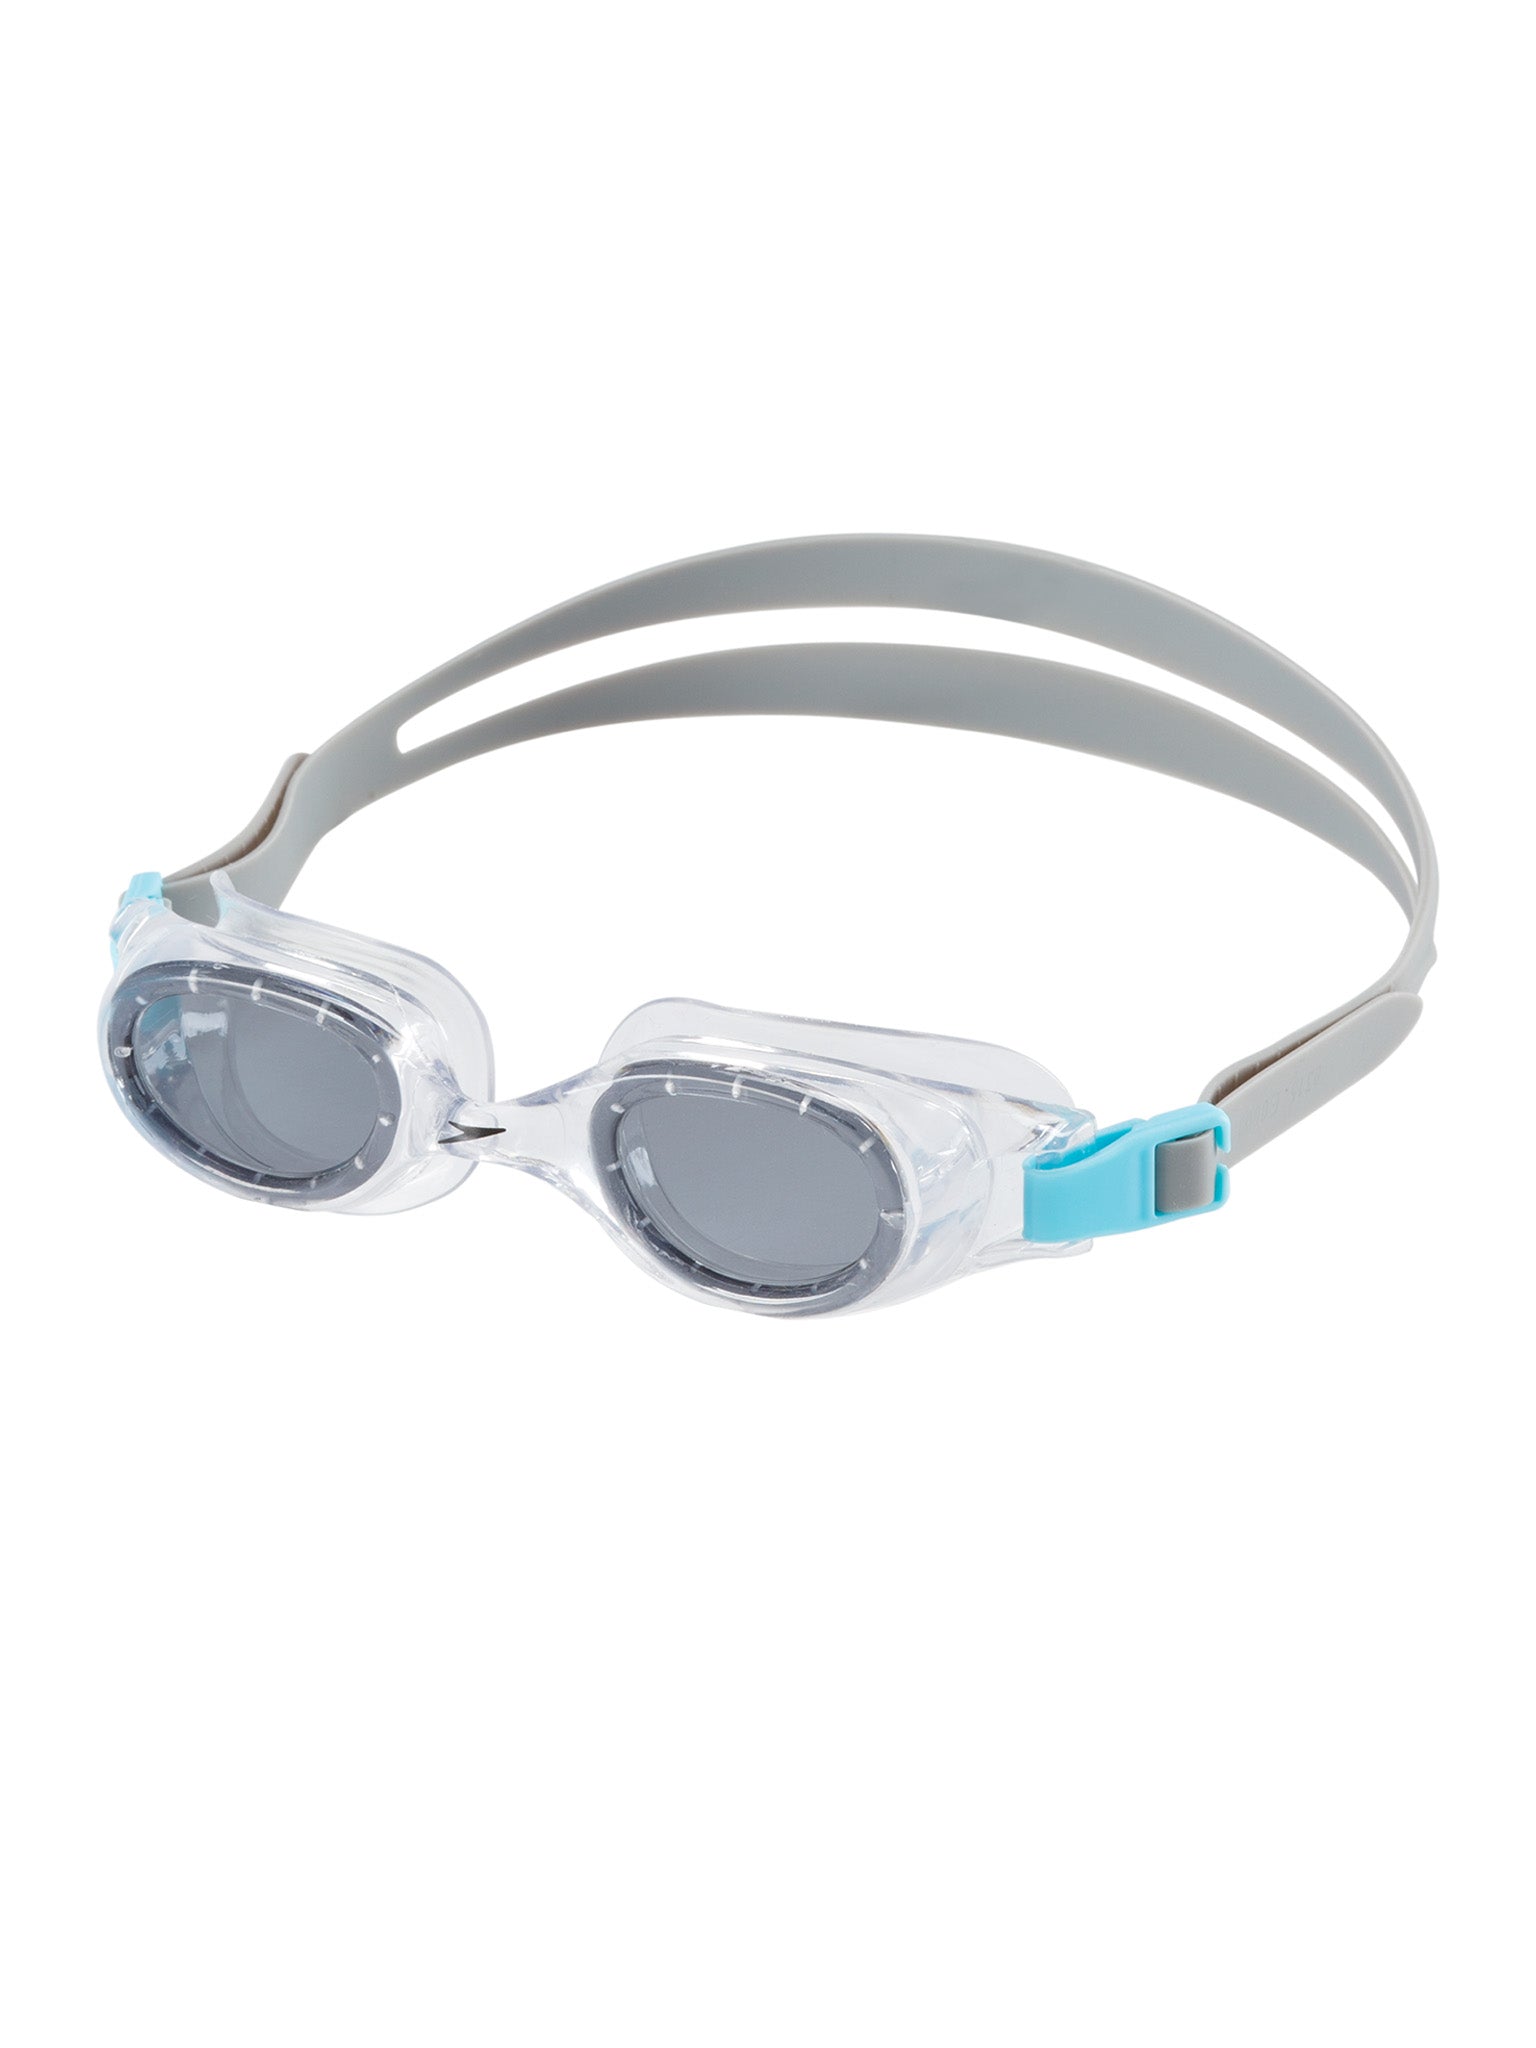 Hydrospex Junior Swim Goggles